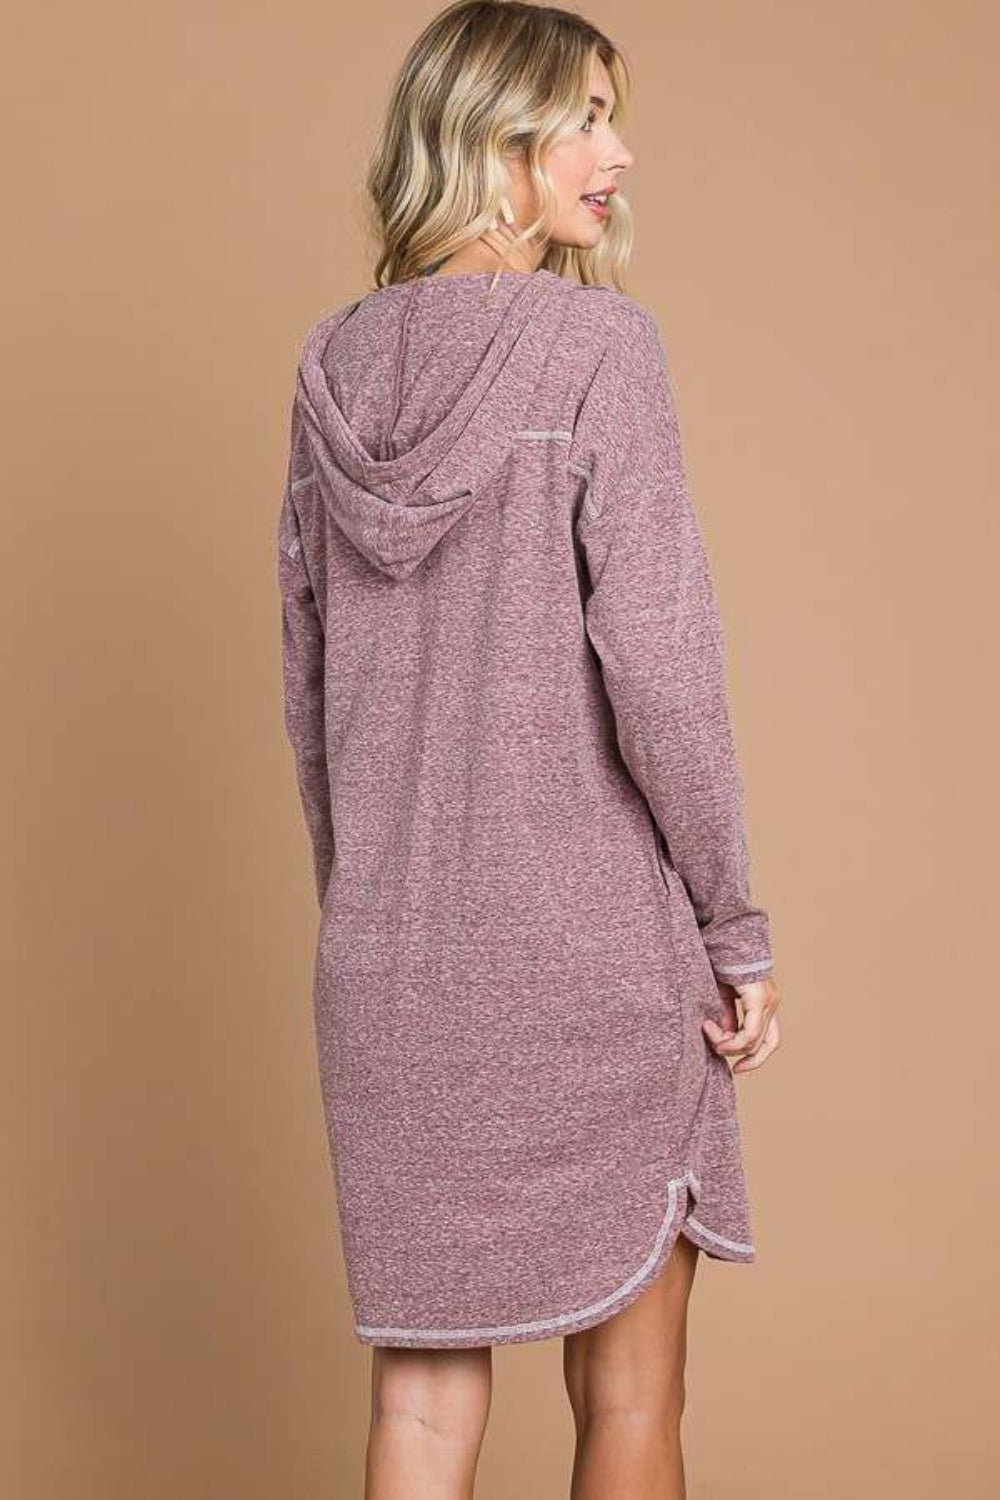 Culture Code – Langes Pulloverkleid mit Kapuze und langen Ärmeln in voller Größe